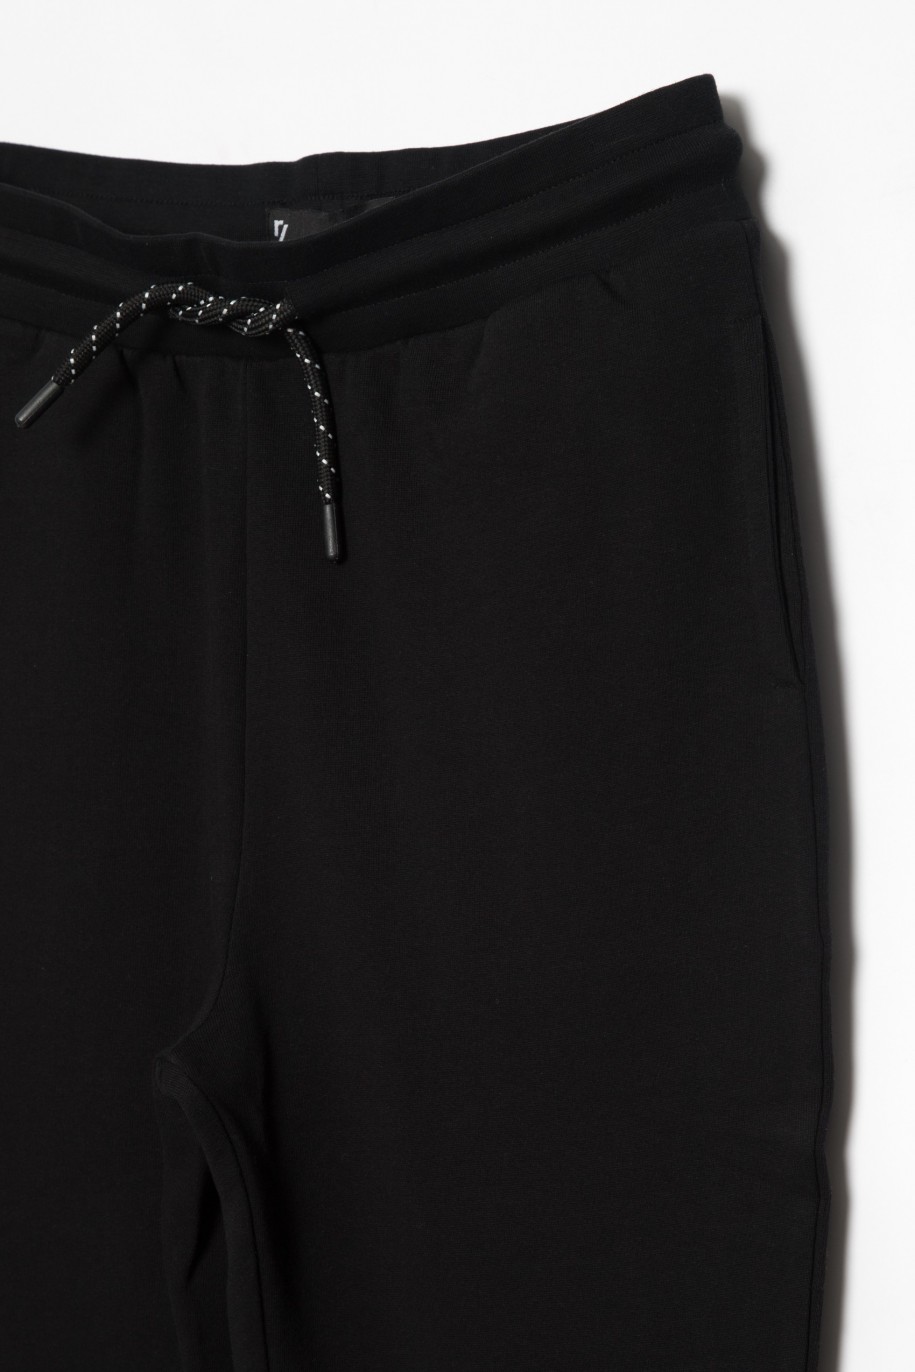 Czarne spodnie dresowe dla chłopaka z nadrukami z tyłu nogawek - 25536